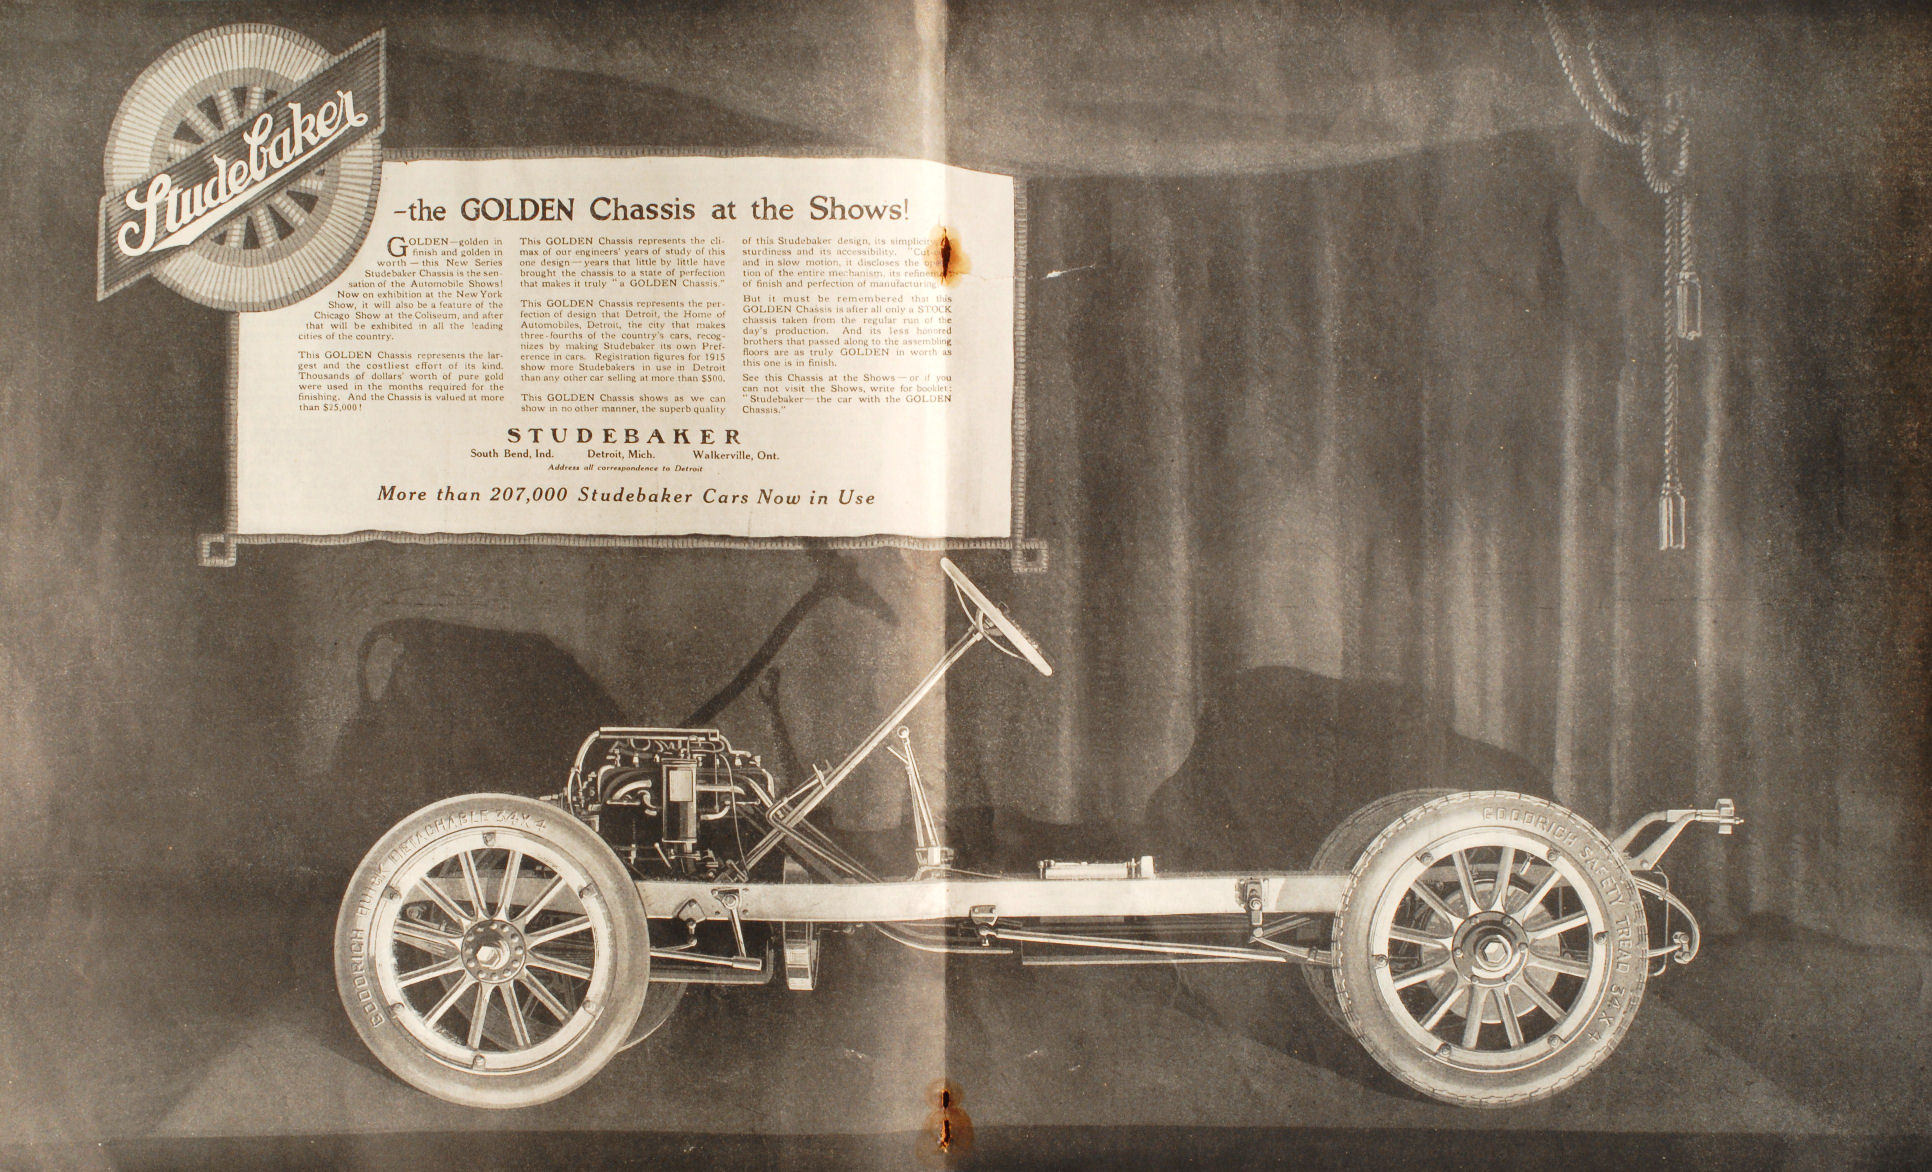 1916 Studebaker Auto Advertising